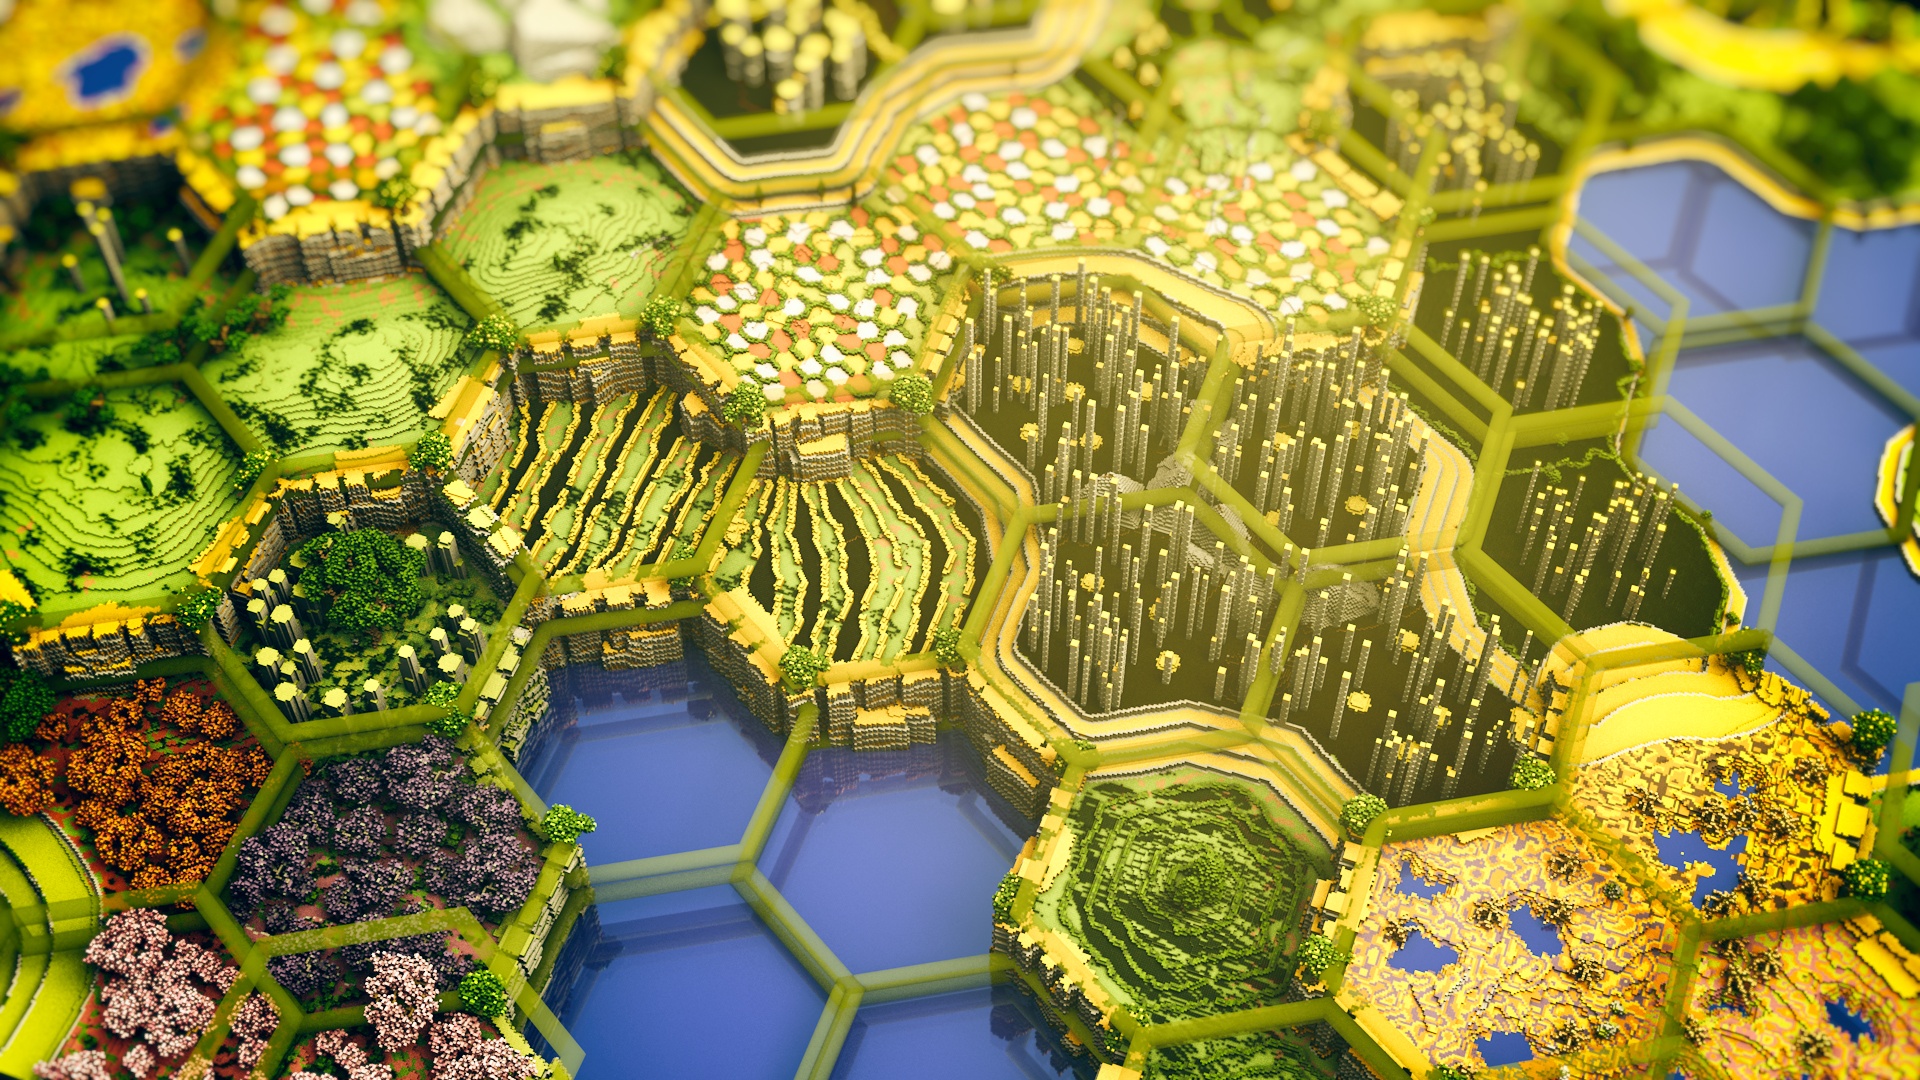 minecraft térkép Minecraft   ez a gyönyörű térkép 400 óra alatt készült el   Hír  minecraft térkép